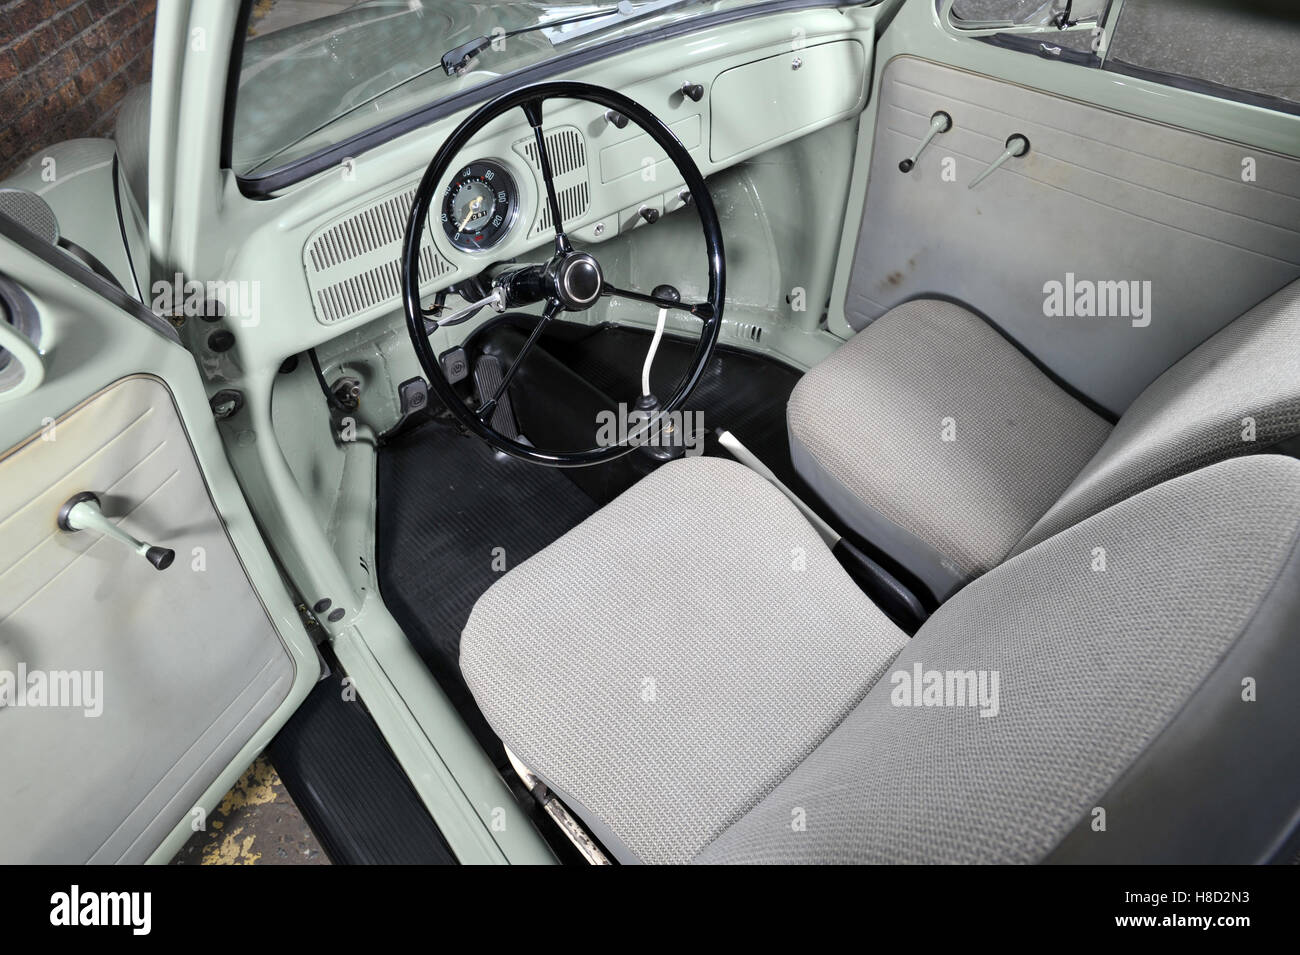 1959 Volkswagen Beetle interior Stock Photo